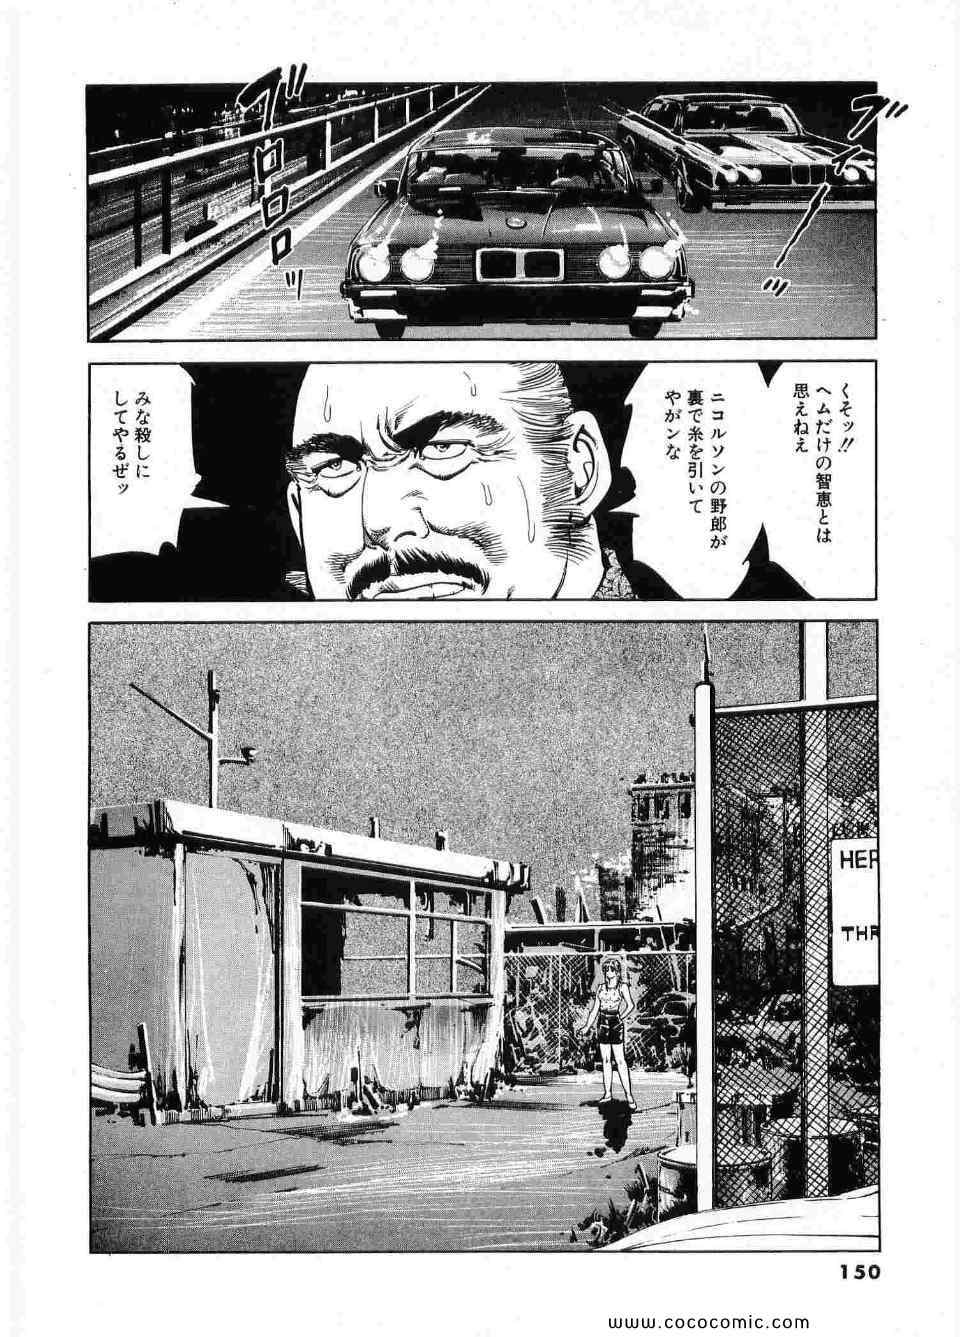 《ブラザーズ (日文)》漫画 ブラザーズ 04卷